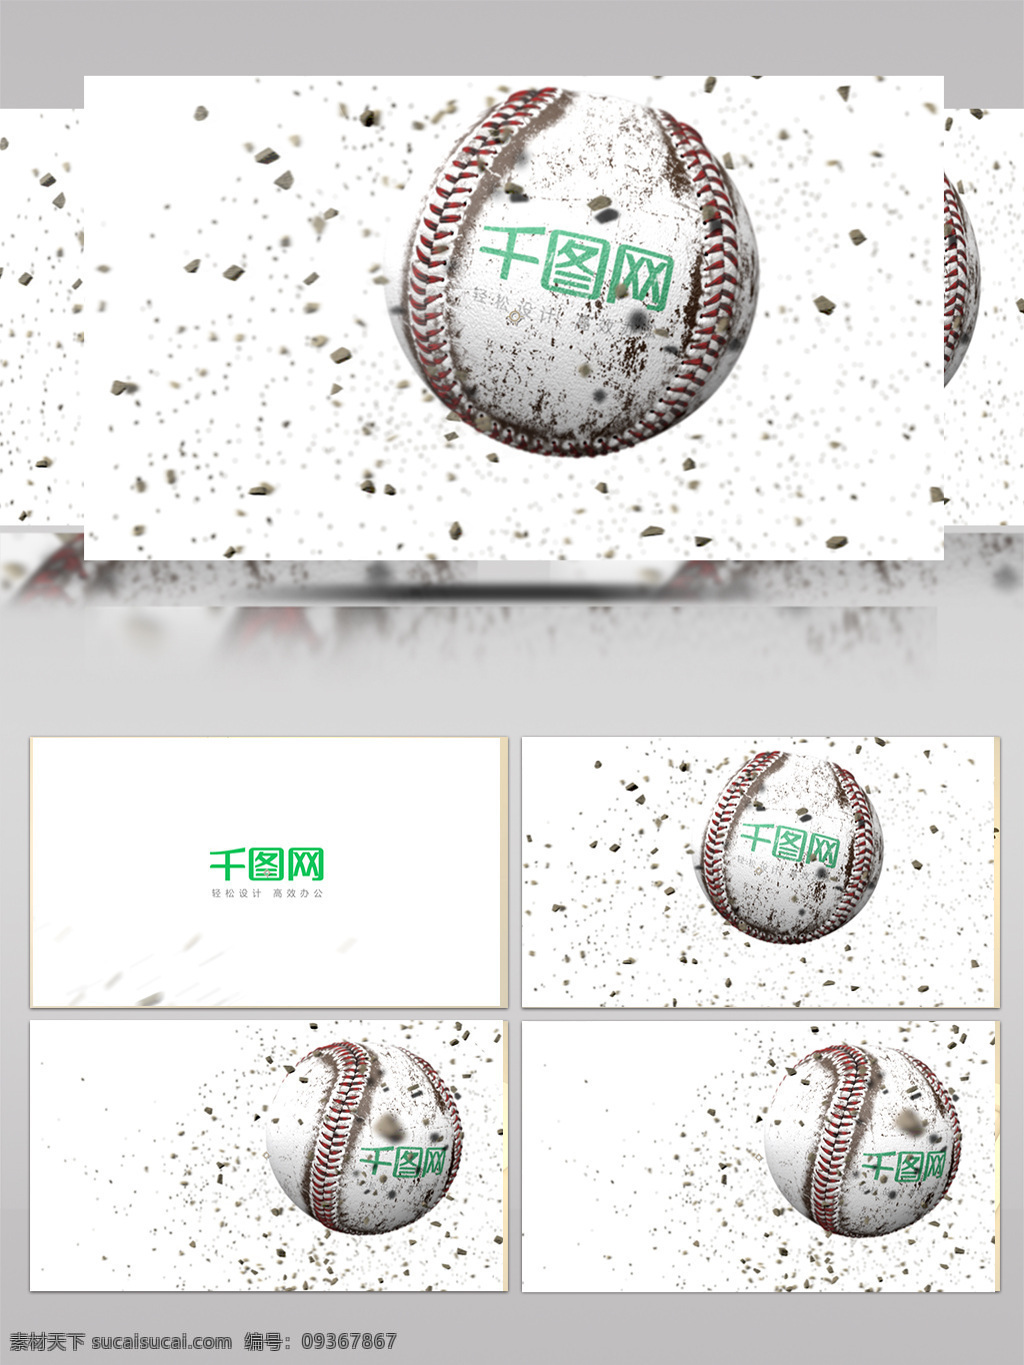 棒球 主题 logo 标志 ae 模板 球体 运动元素 尘土飞起 运动会开场 揭示logo 飞溅棒球